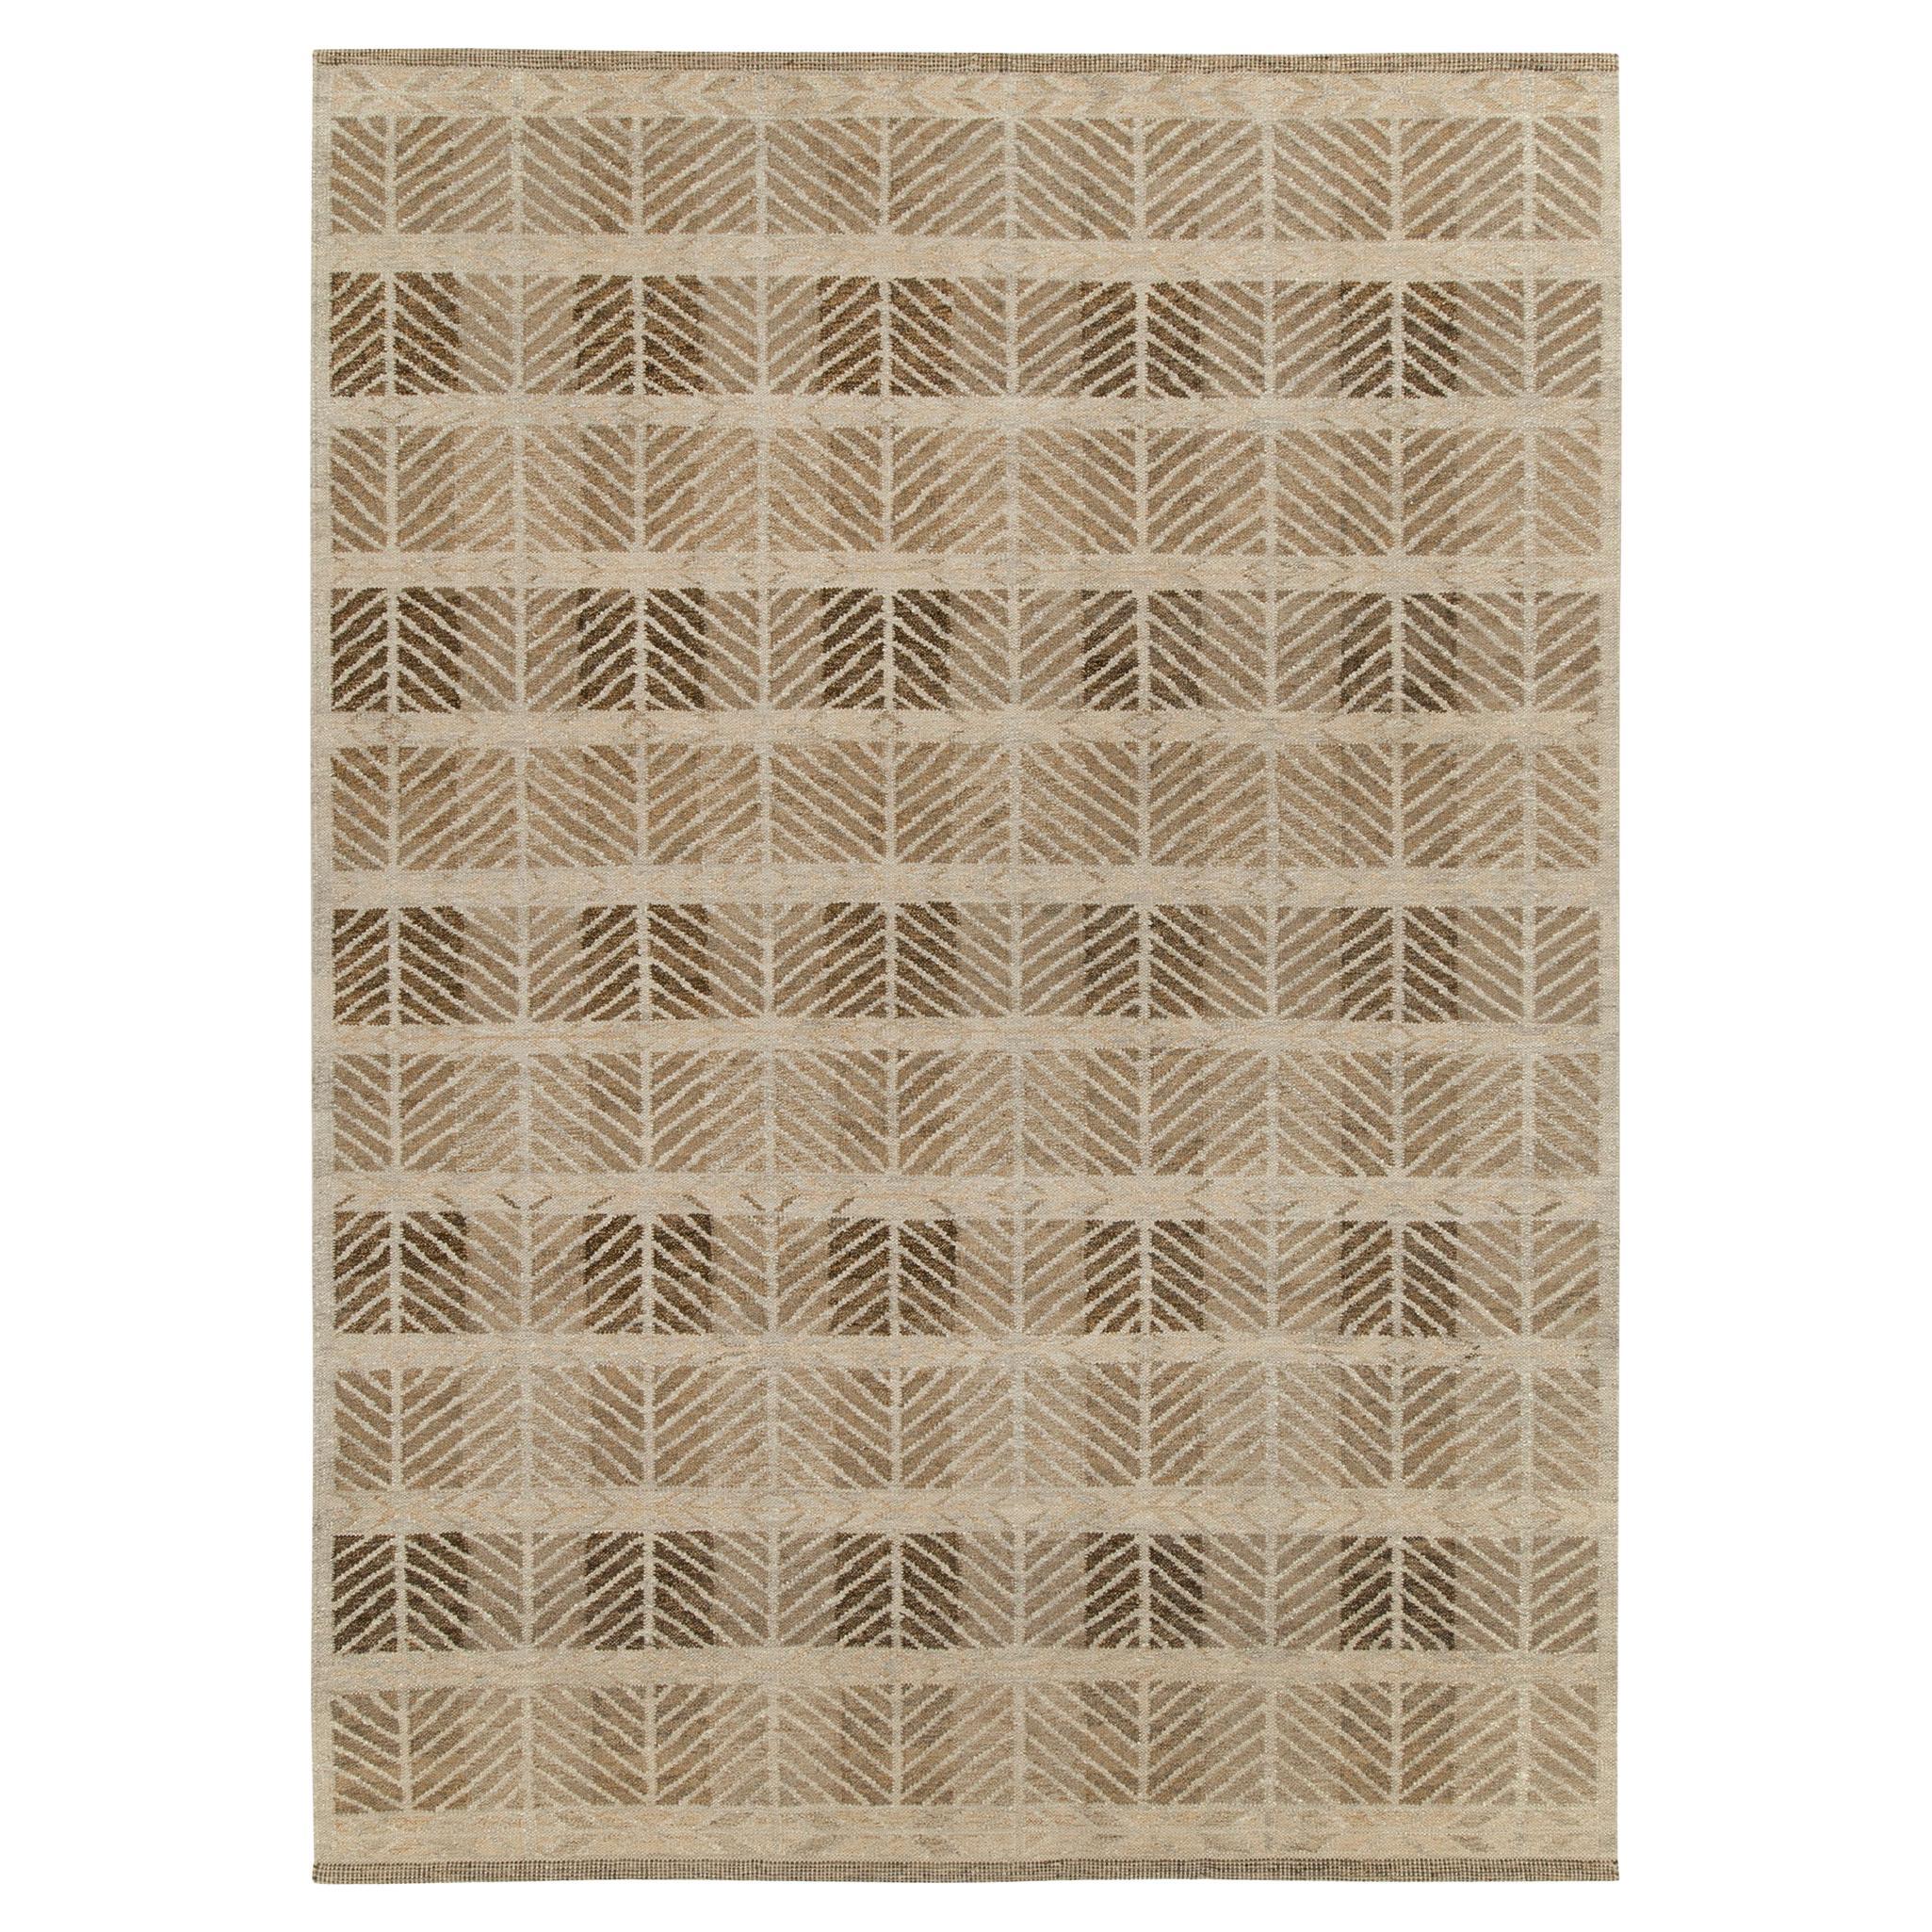 Teppich & Kelim im skandinavischen Stil, Hemp-Kelim in Beige, Braun mit geometrischem Muster